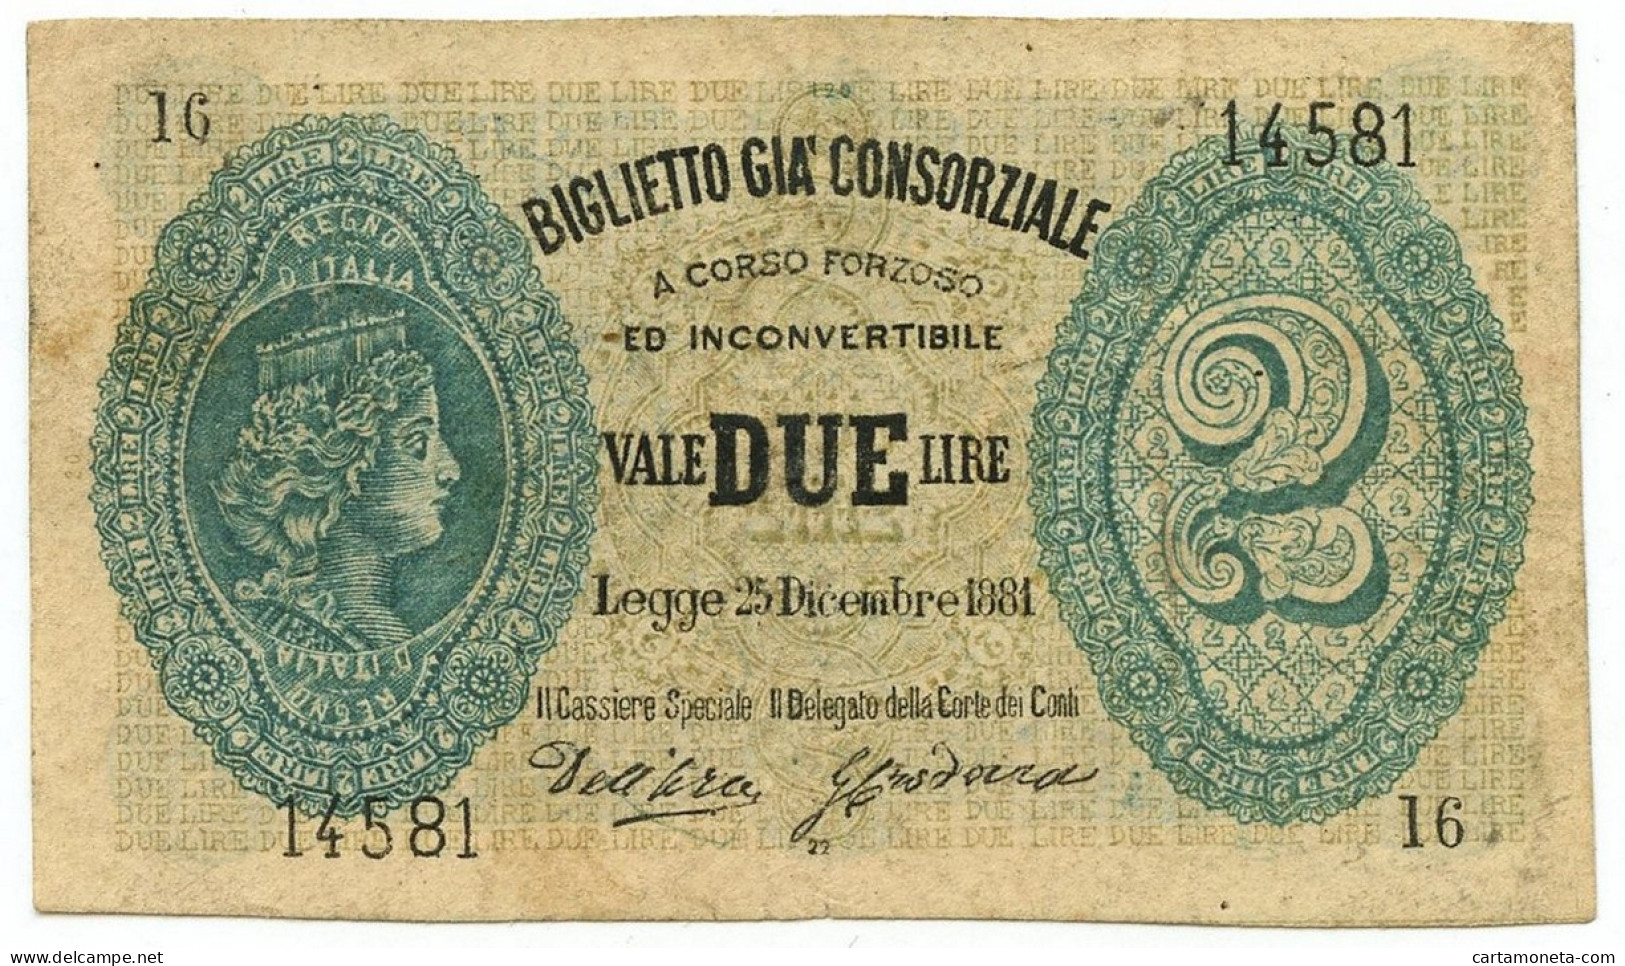 2 LIRE FALSO D'EPOCA BIGLIETTO GIÀ CONSORZIALE REGNO D'ITALIA 25/12/1881 BB - [ 8] Falsi & Saggi